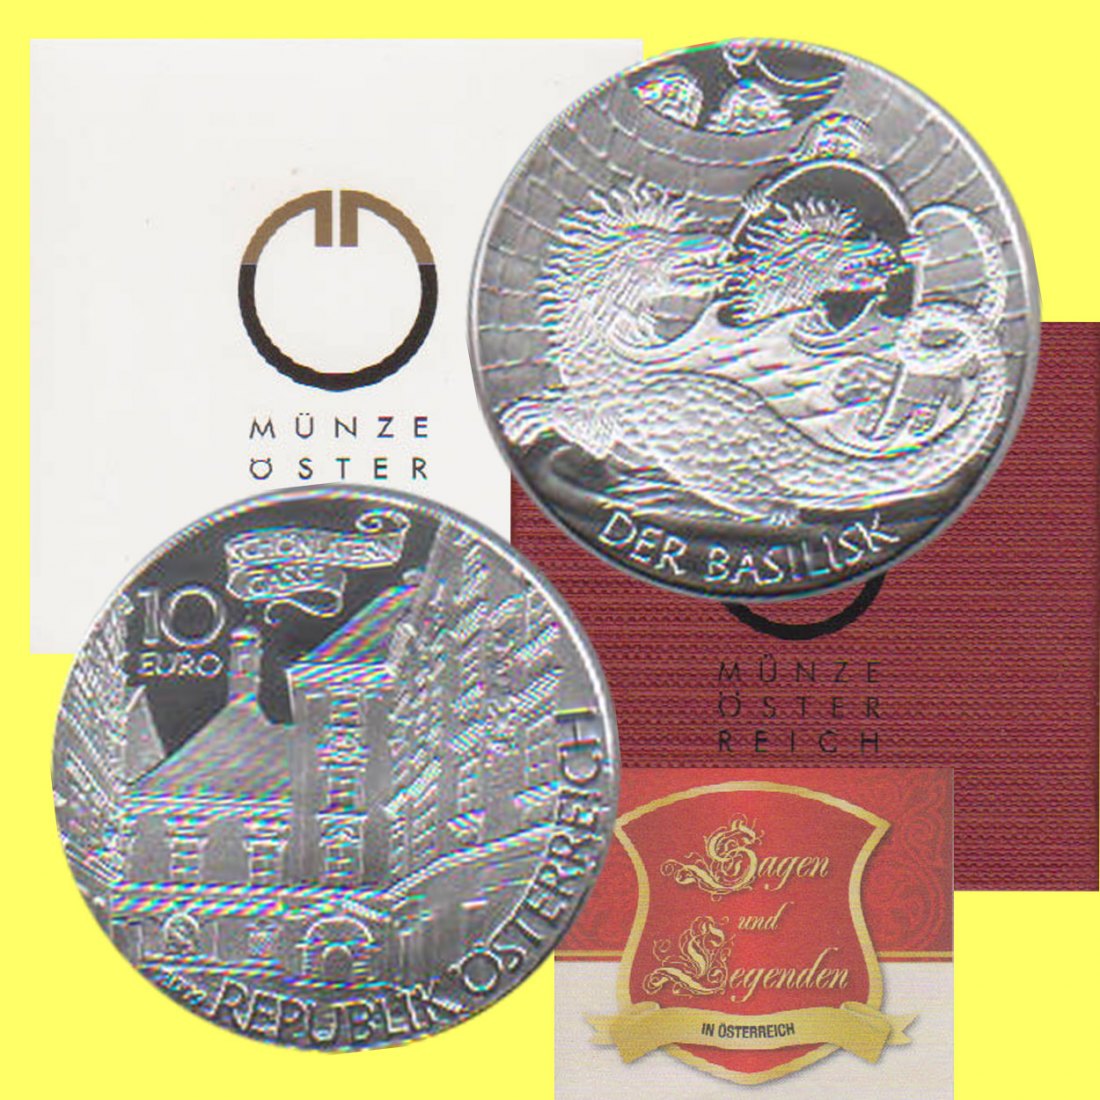  10-Euro-Silbermünze Österreich *Der Basilisk* 2009 *PP* 1. Ausg. der Serie max 40.000St!   